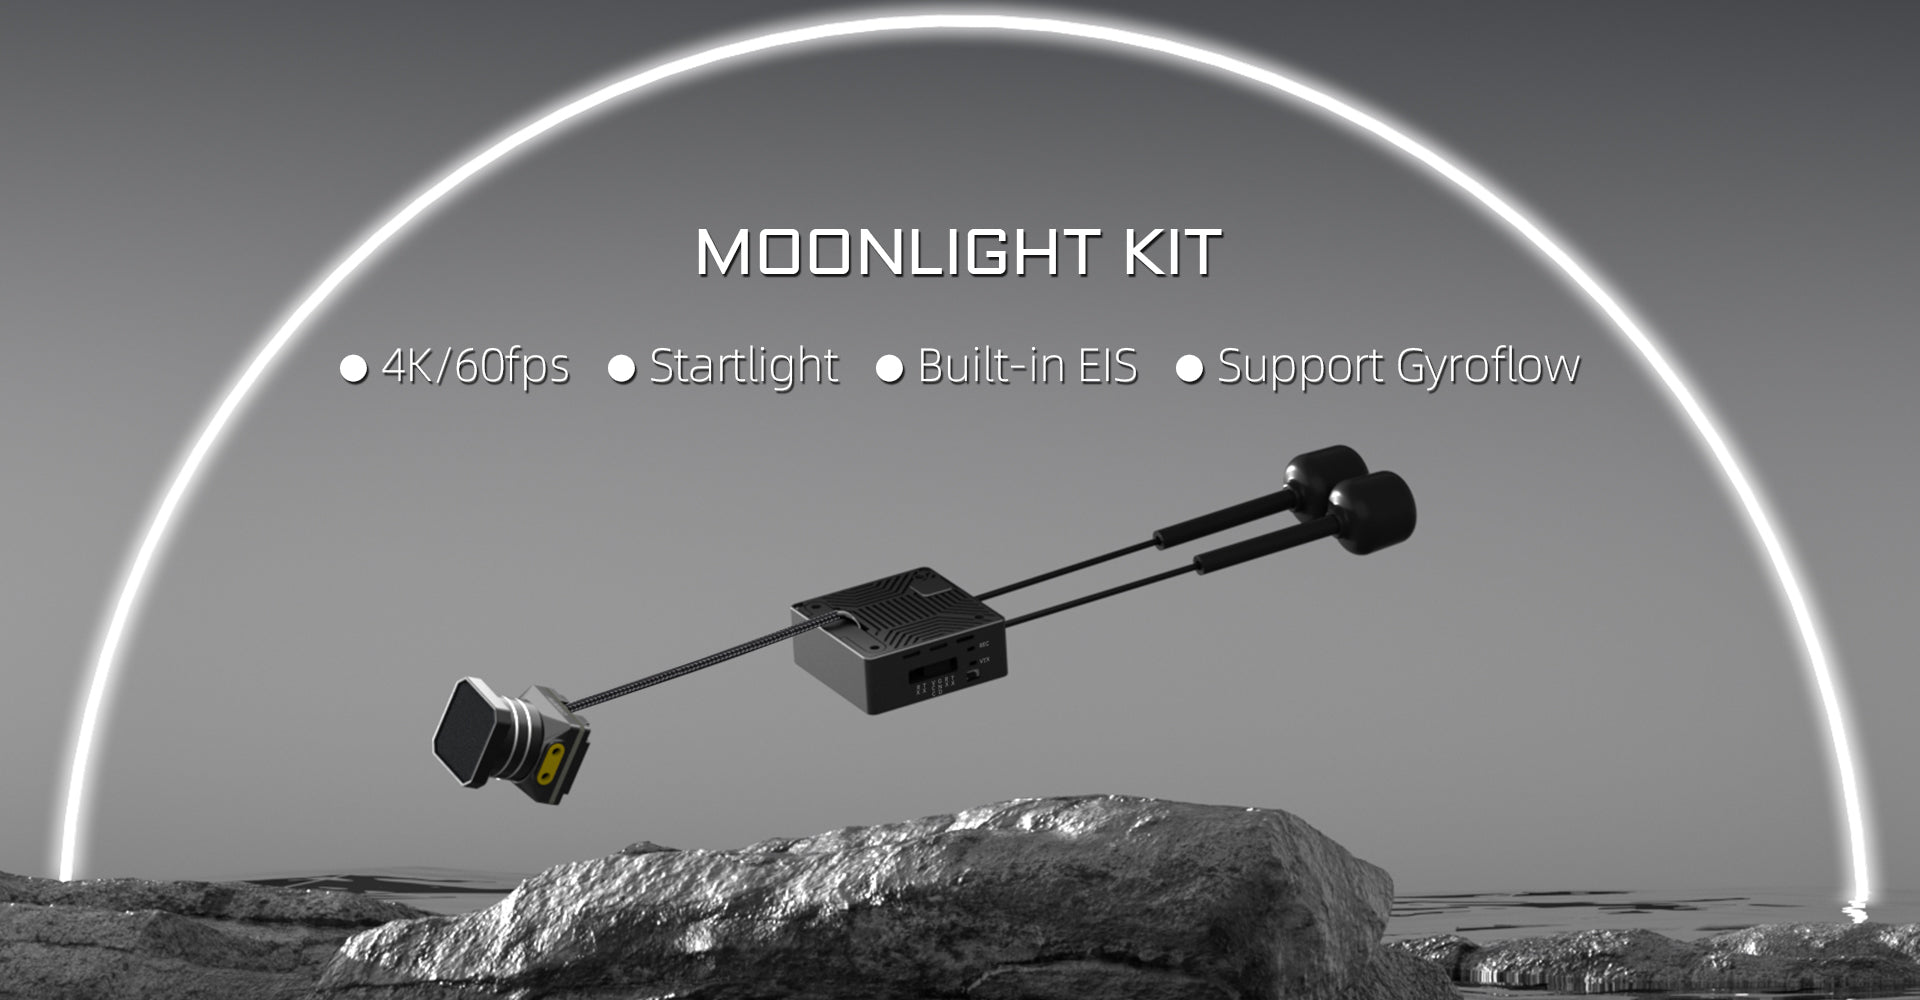 Walksnail Moonlight kit, MOONLIGHT KIT 4KI6Ofps Startlight Built-in E